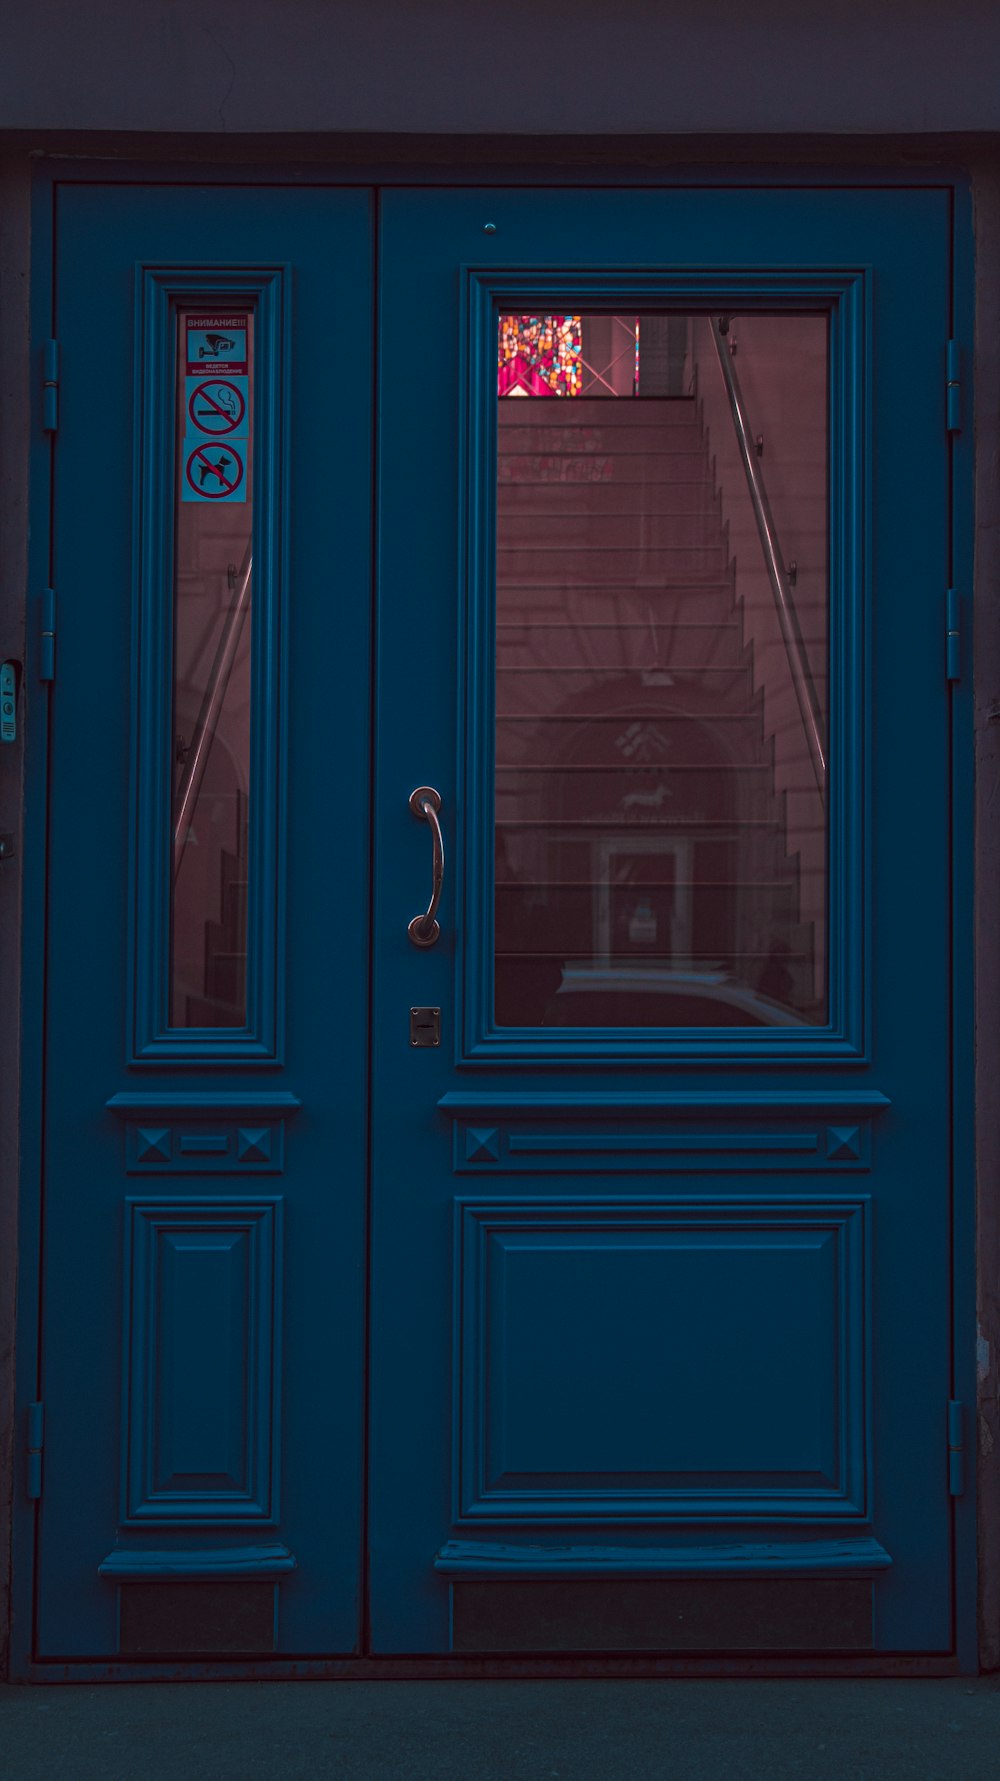 blue wooden door with black steel door lever